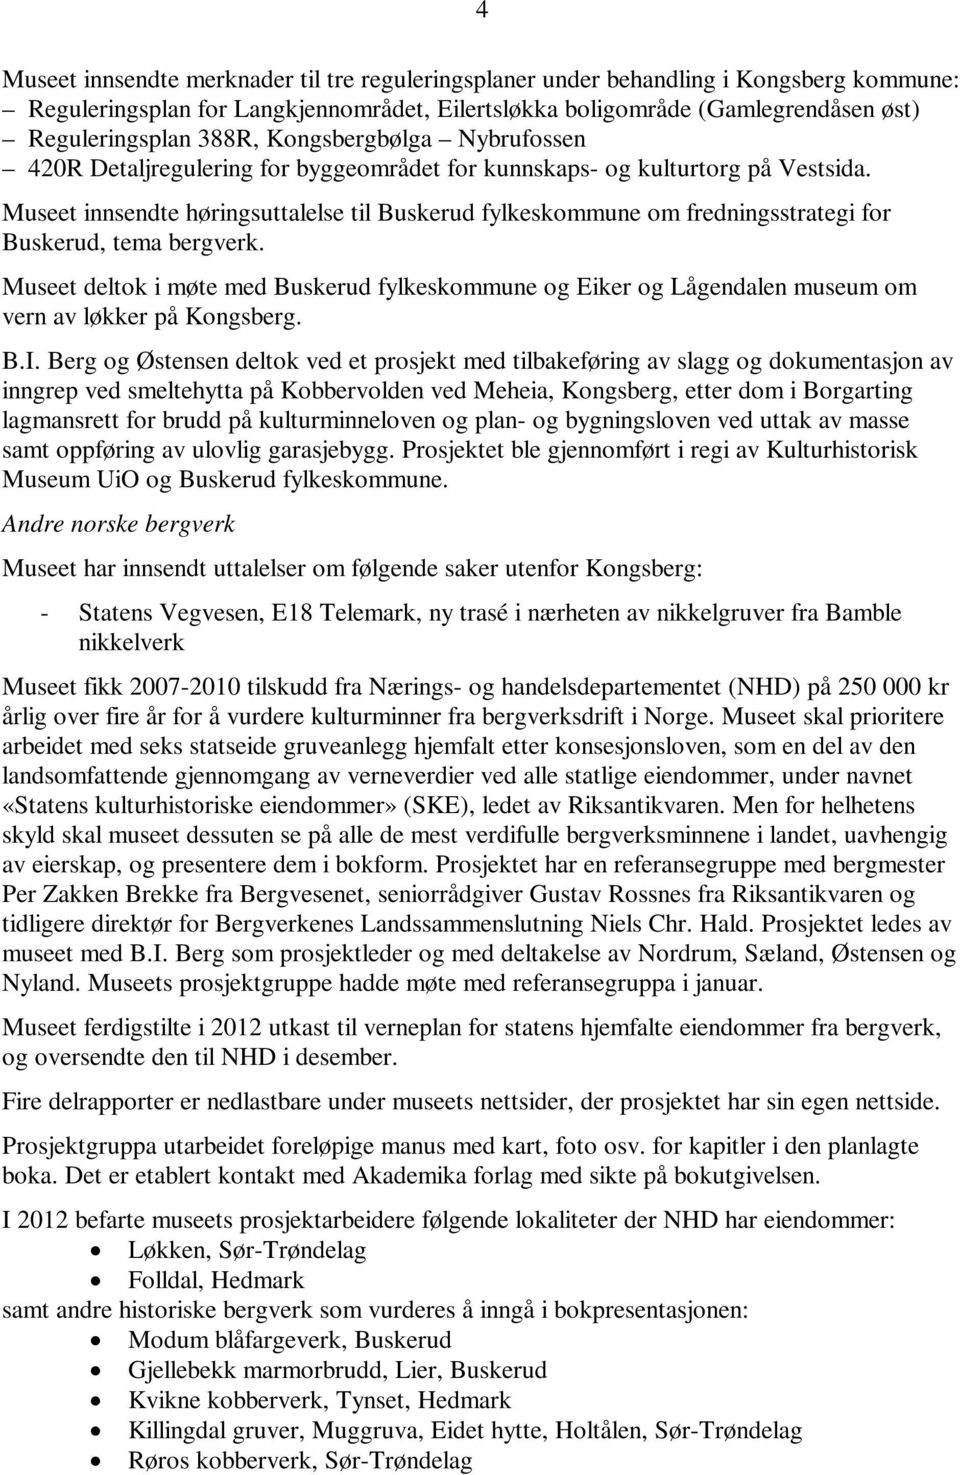 Museet innsendte høringsuttalelse til Buskerud fylkeskommune om fredningsstrategi for Buskerud, tema bergverk.